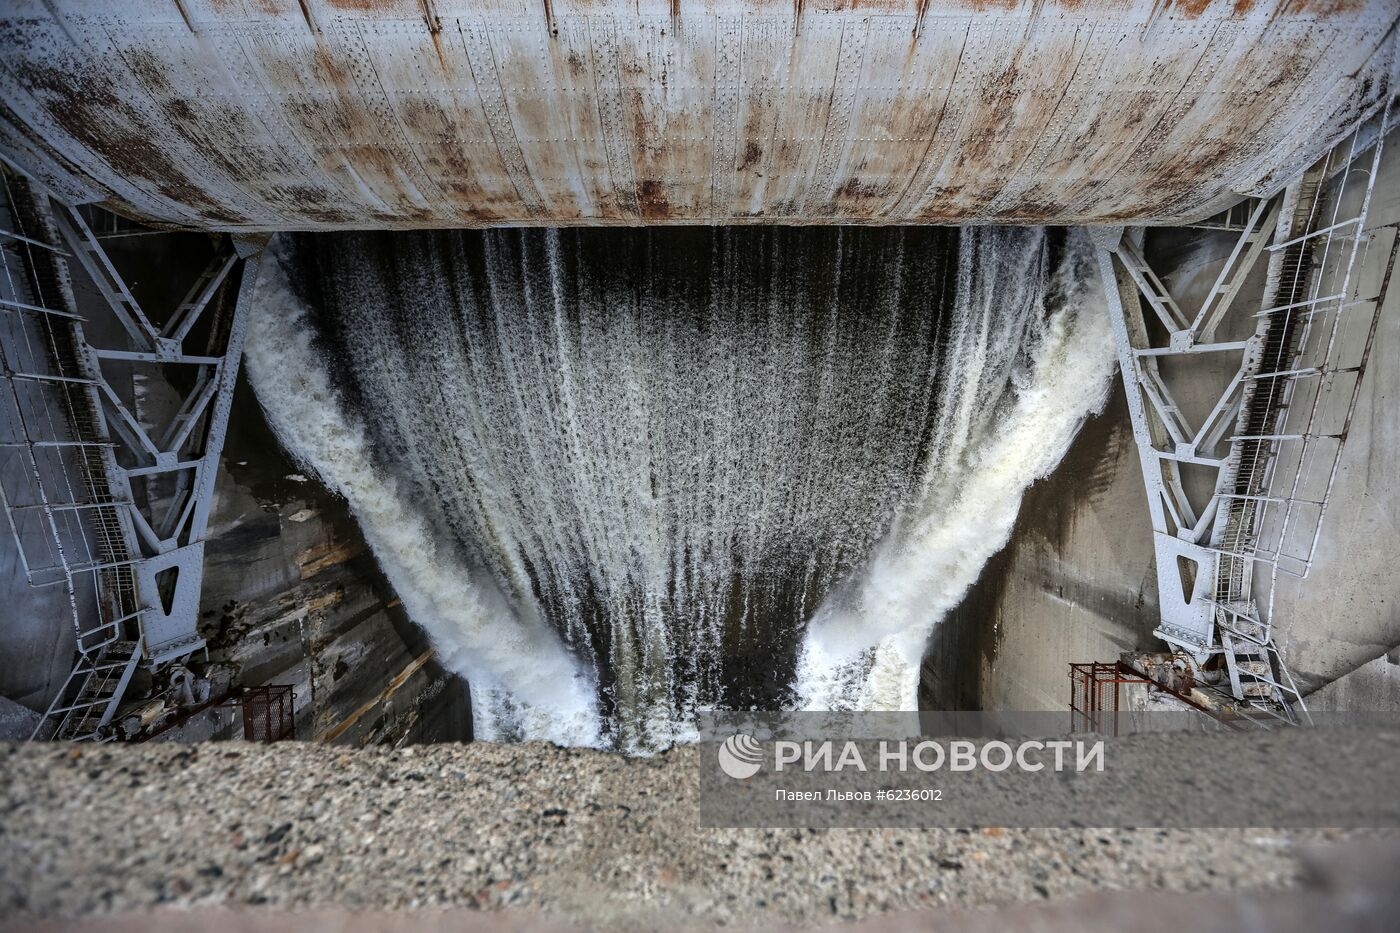 Сброс воды на водохранилищах в Мурманской области